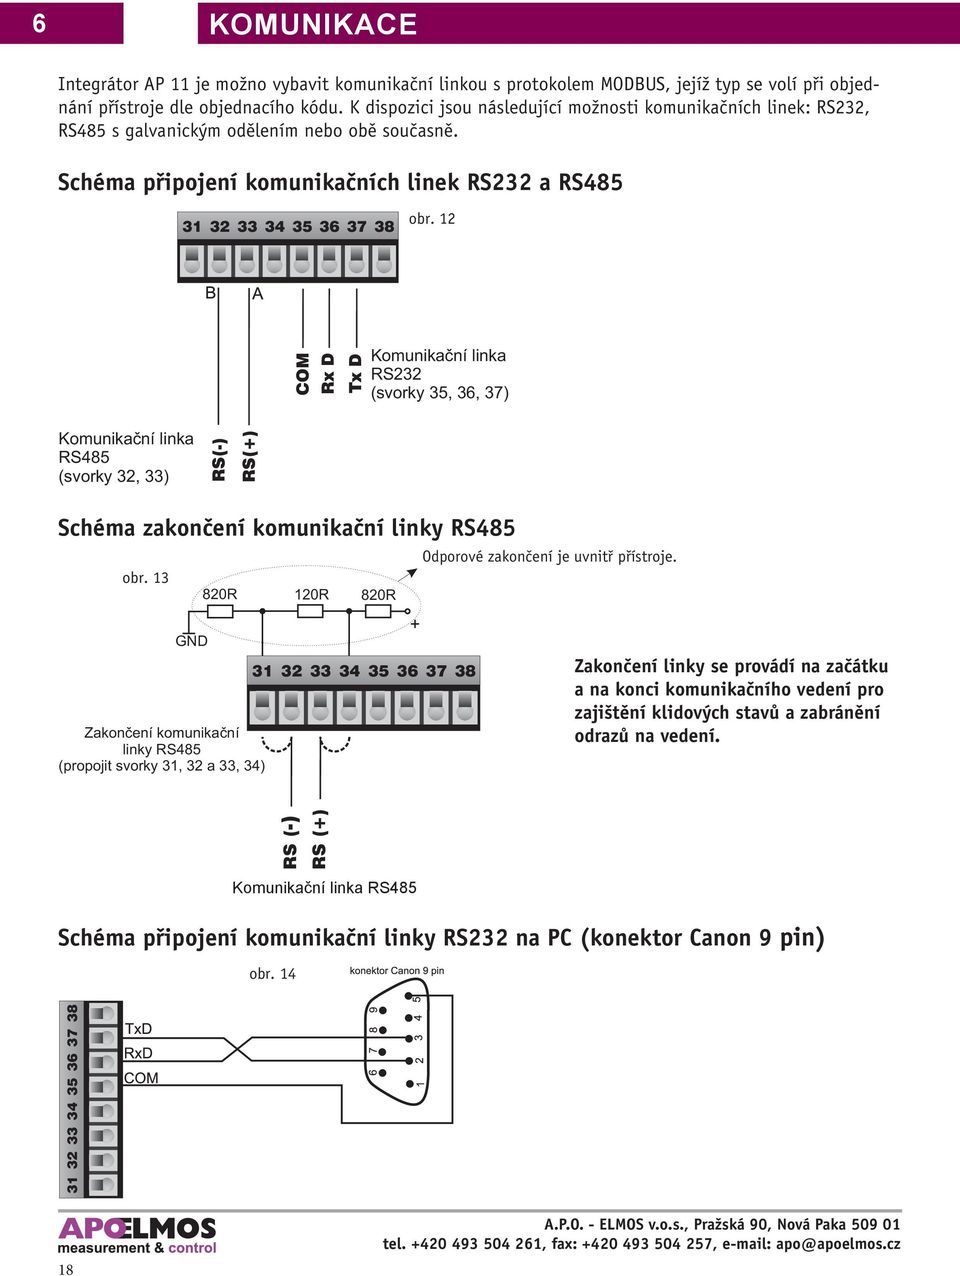 12 COM Rx D Tx D Komunikační linka RS232 (svorky 35, 36, 37) Komunikační linka RS485 (svorky 32, 33) Schéma zakončení komunikační linky RS485 obr.